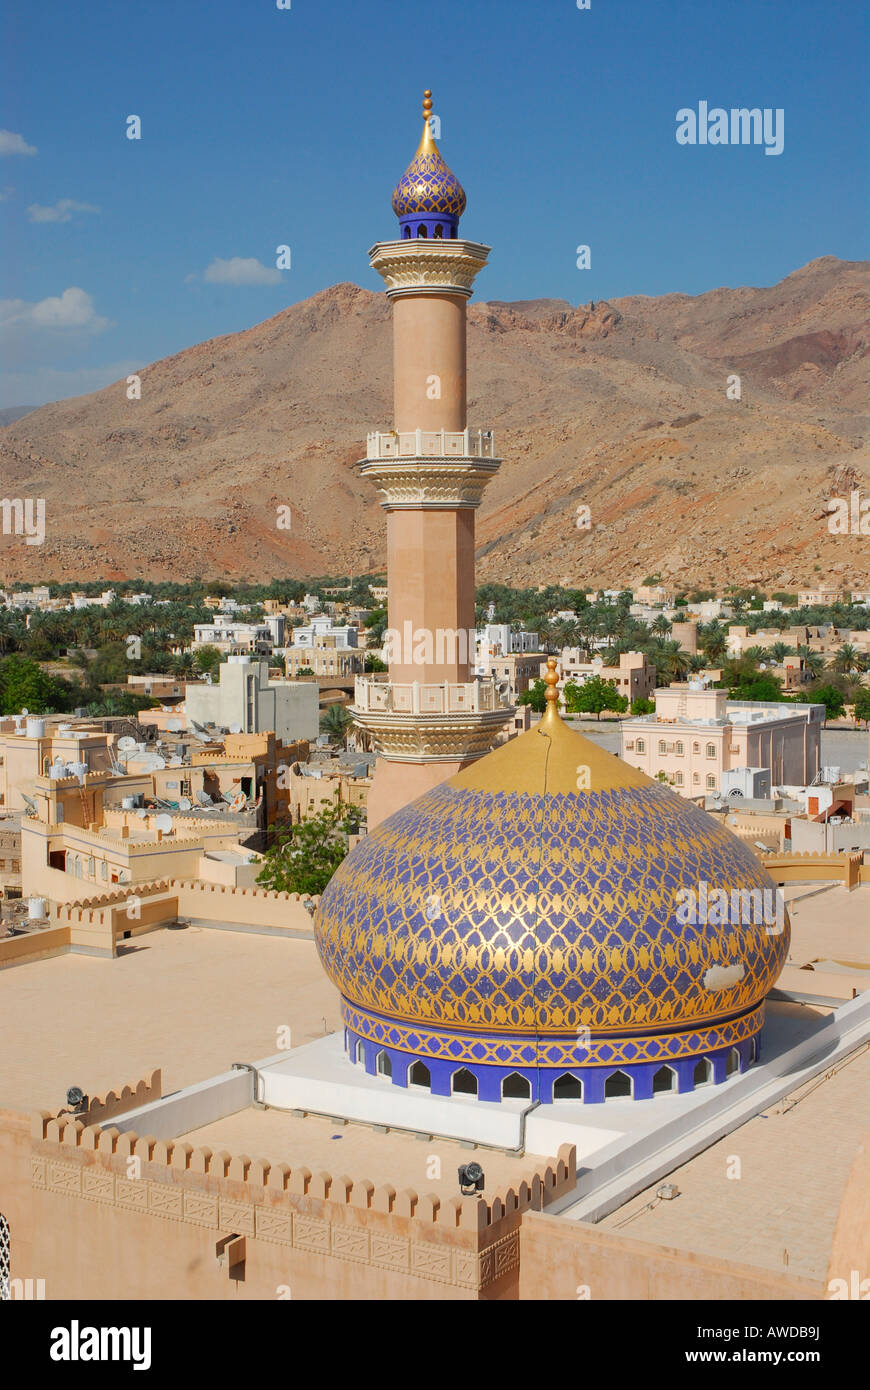 Dome of sultan Qaboos mosque, Nizwa, Oman Stock Photo